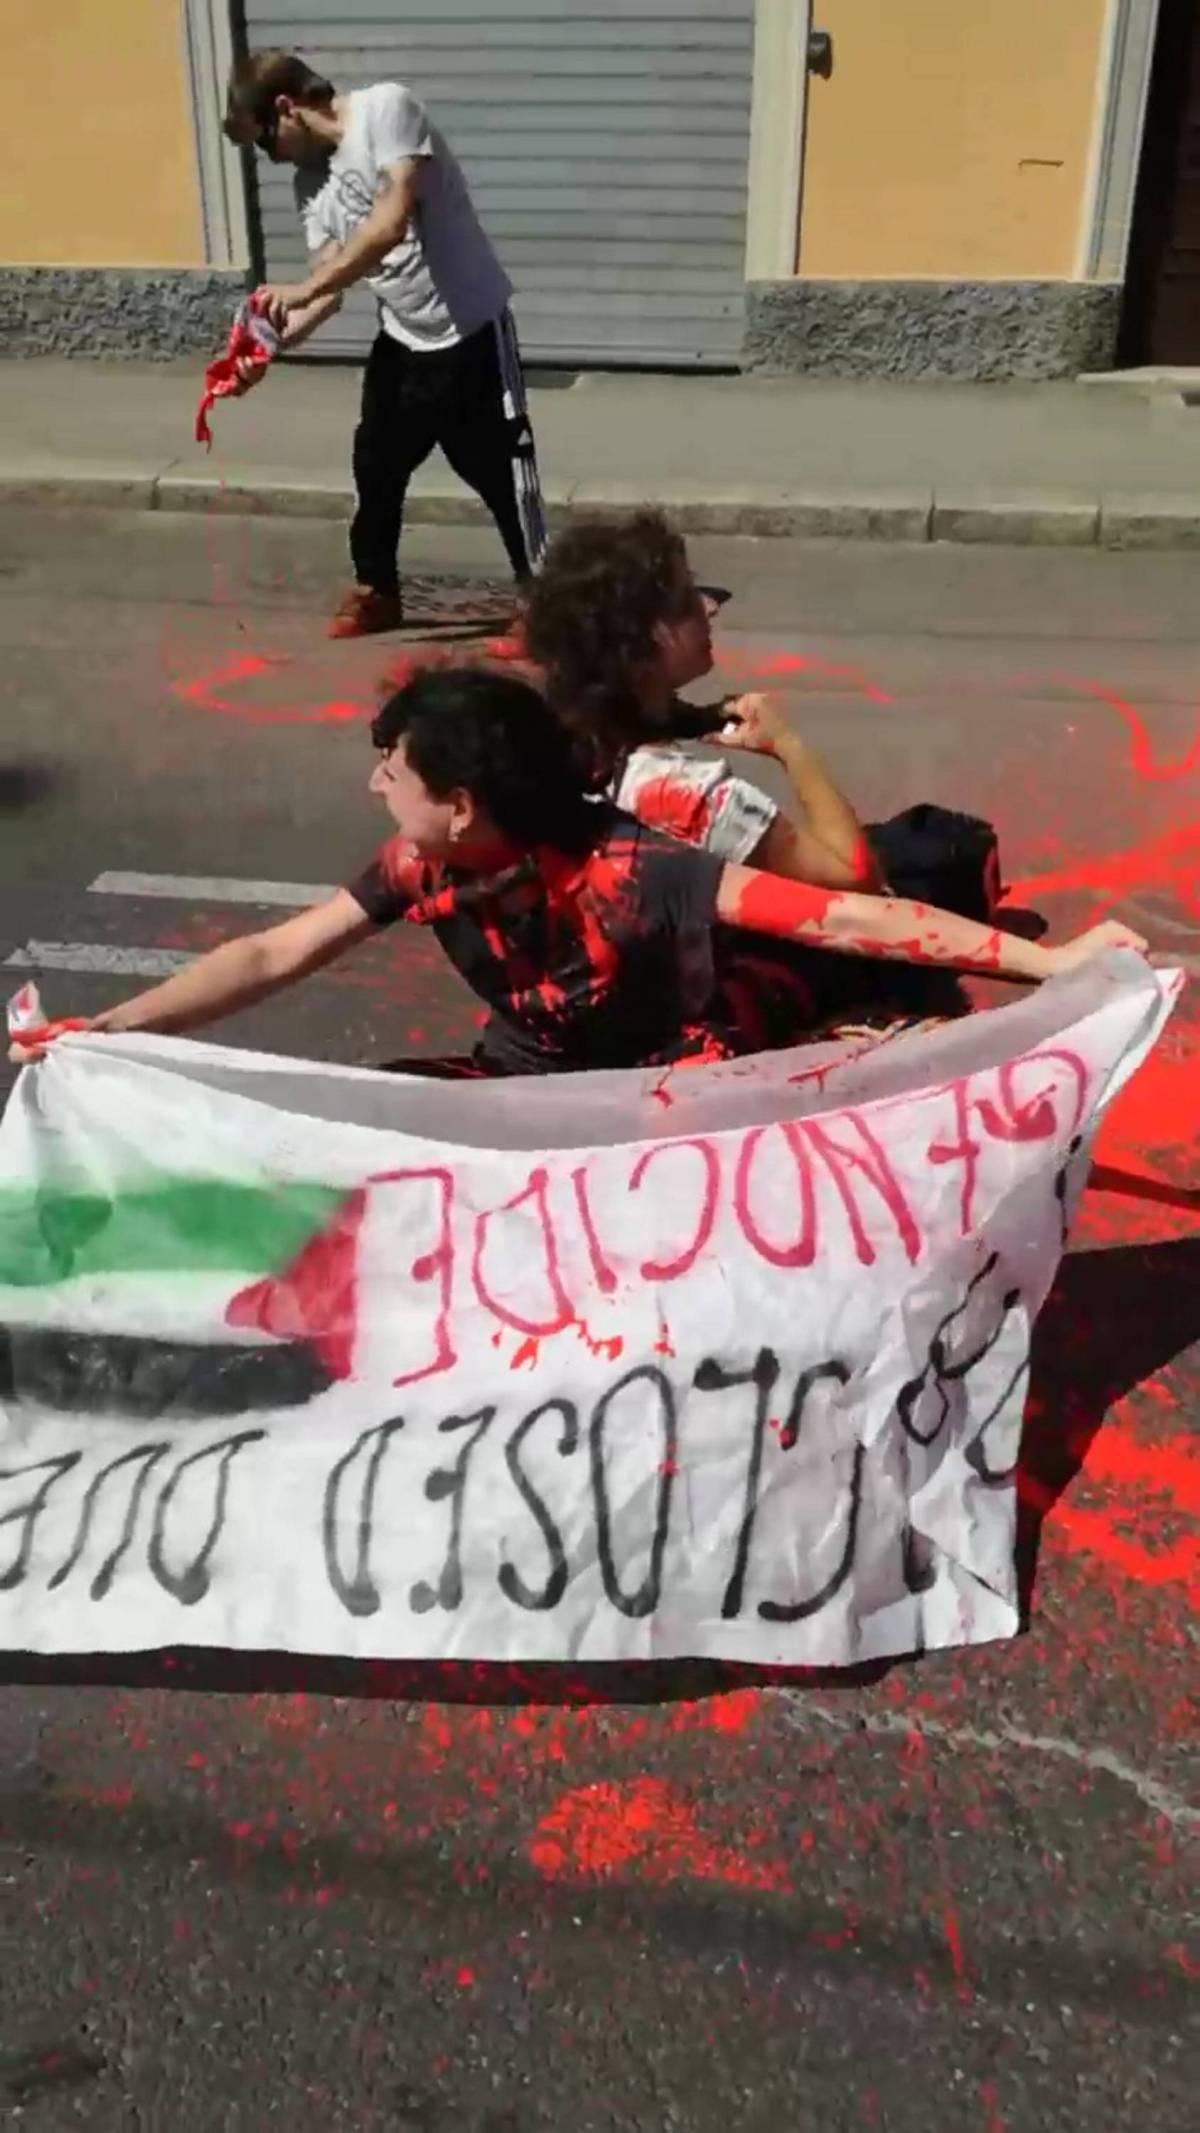 "Vernice rossa e bandiere pro Palestina". Occupata strada a Bologna durante il Tour de France